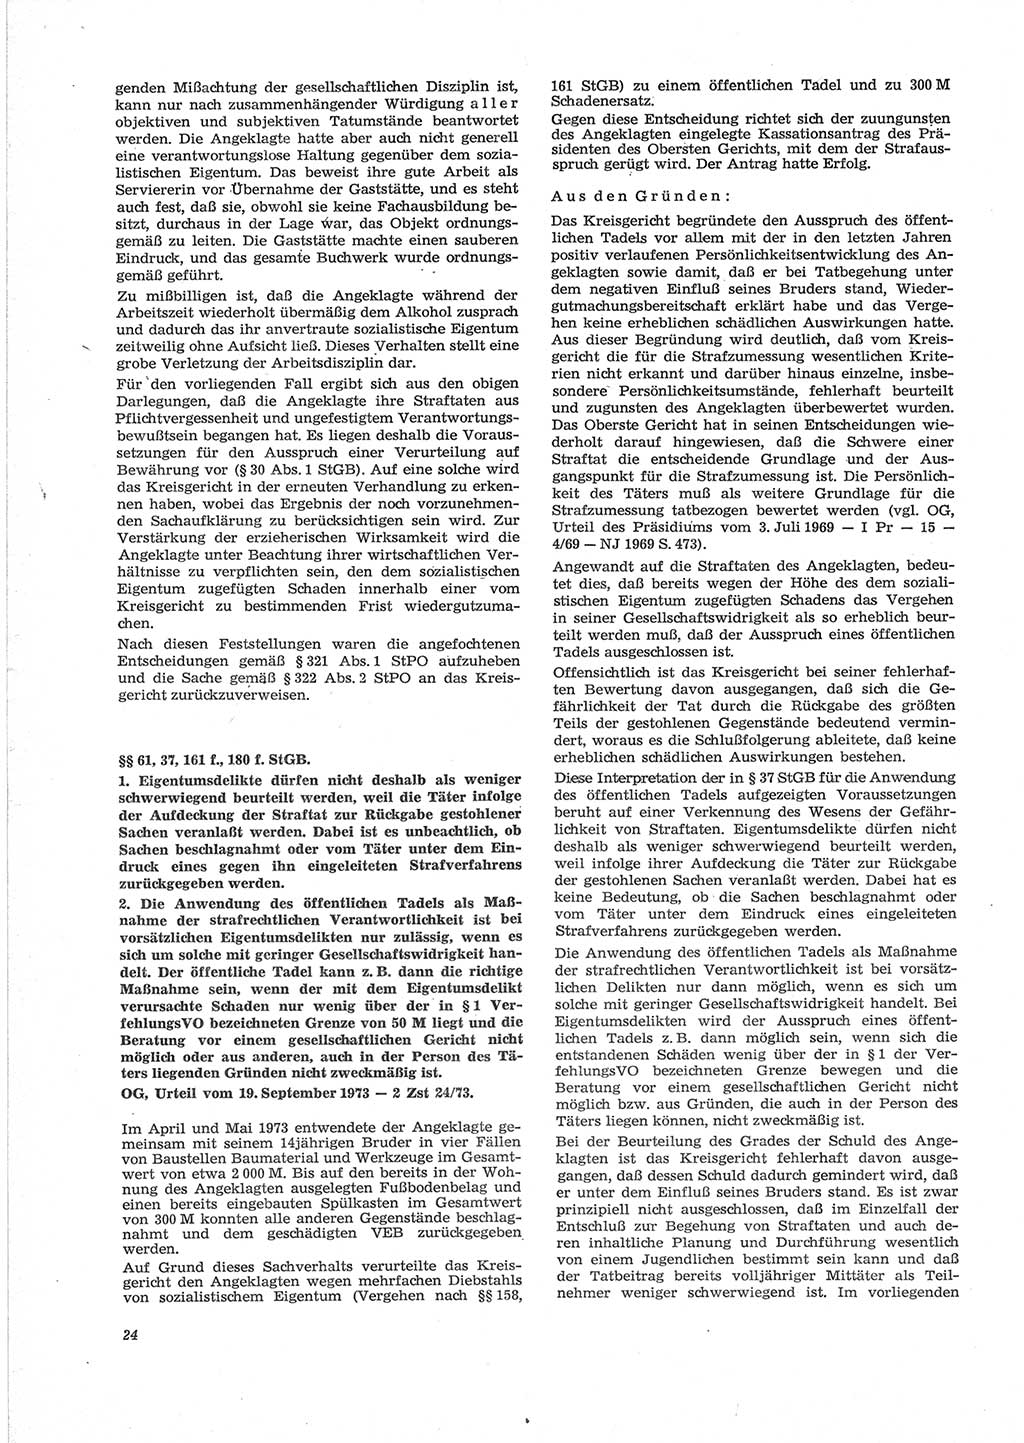 Neue Justiz (NJ), Zeitschrift für Recht und Rechtswissenschaft [Deutsche Demokratische Republik (DDR)], 28. Jahrgang 1974, Seite 24 (NJ DDR 1974, S. 24)